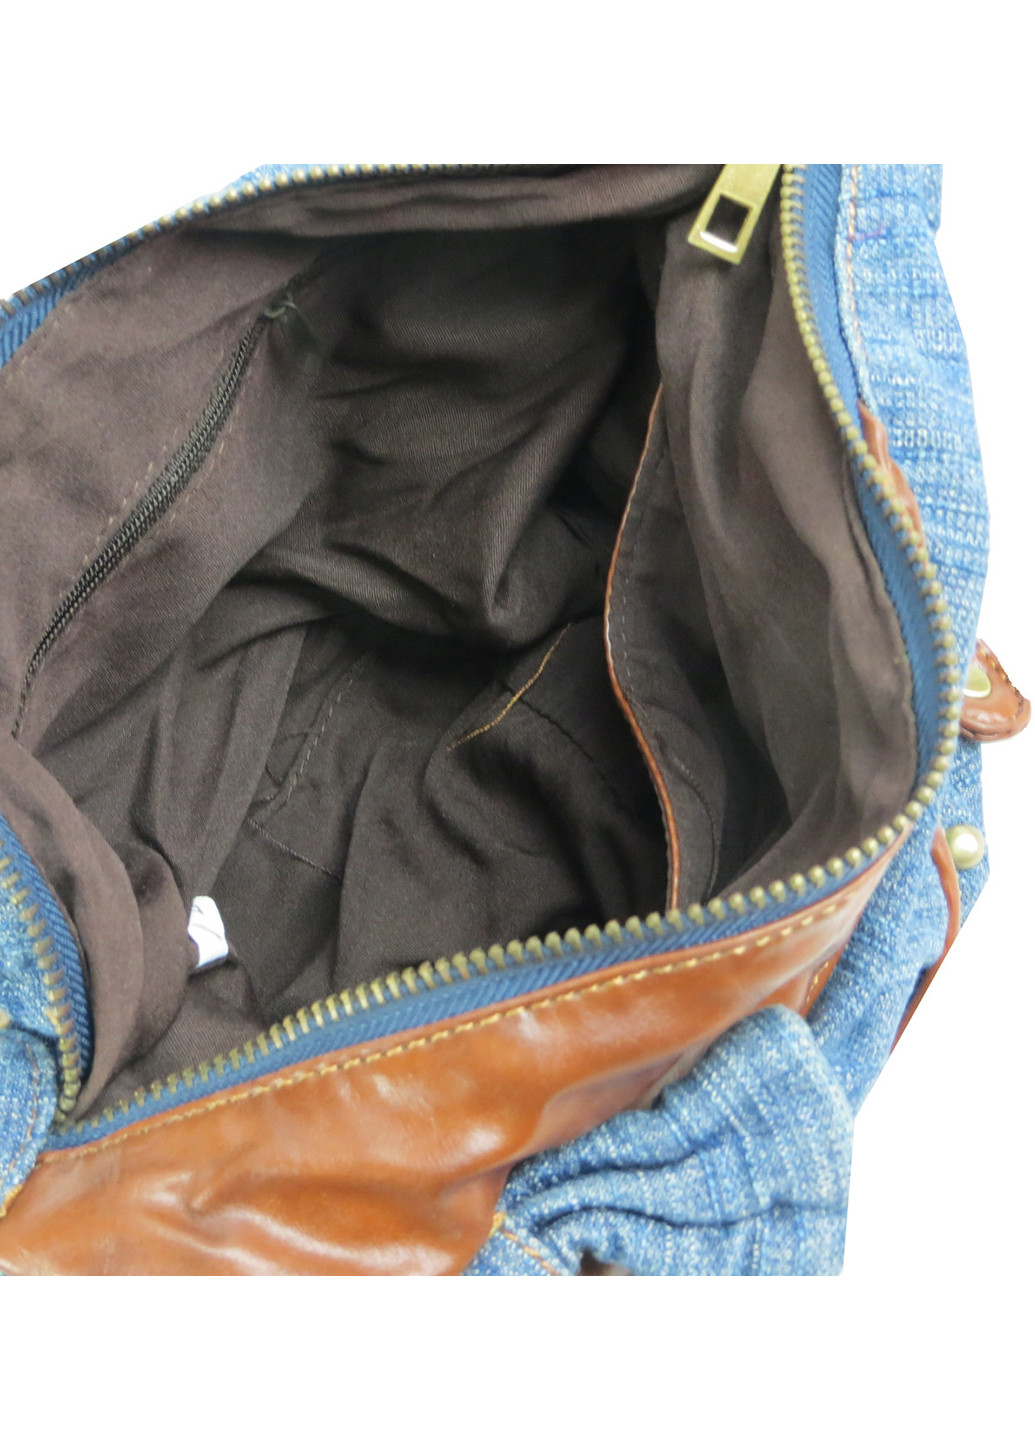 Женская джинсовая сумка небольшого размера 28х18х12 см FASHION JEANS (257062833)